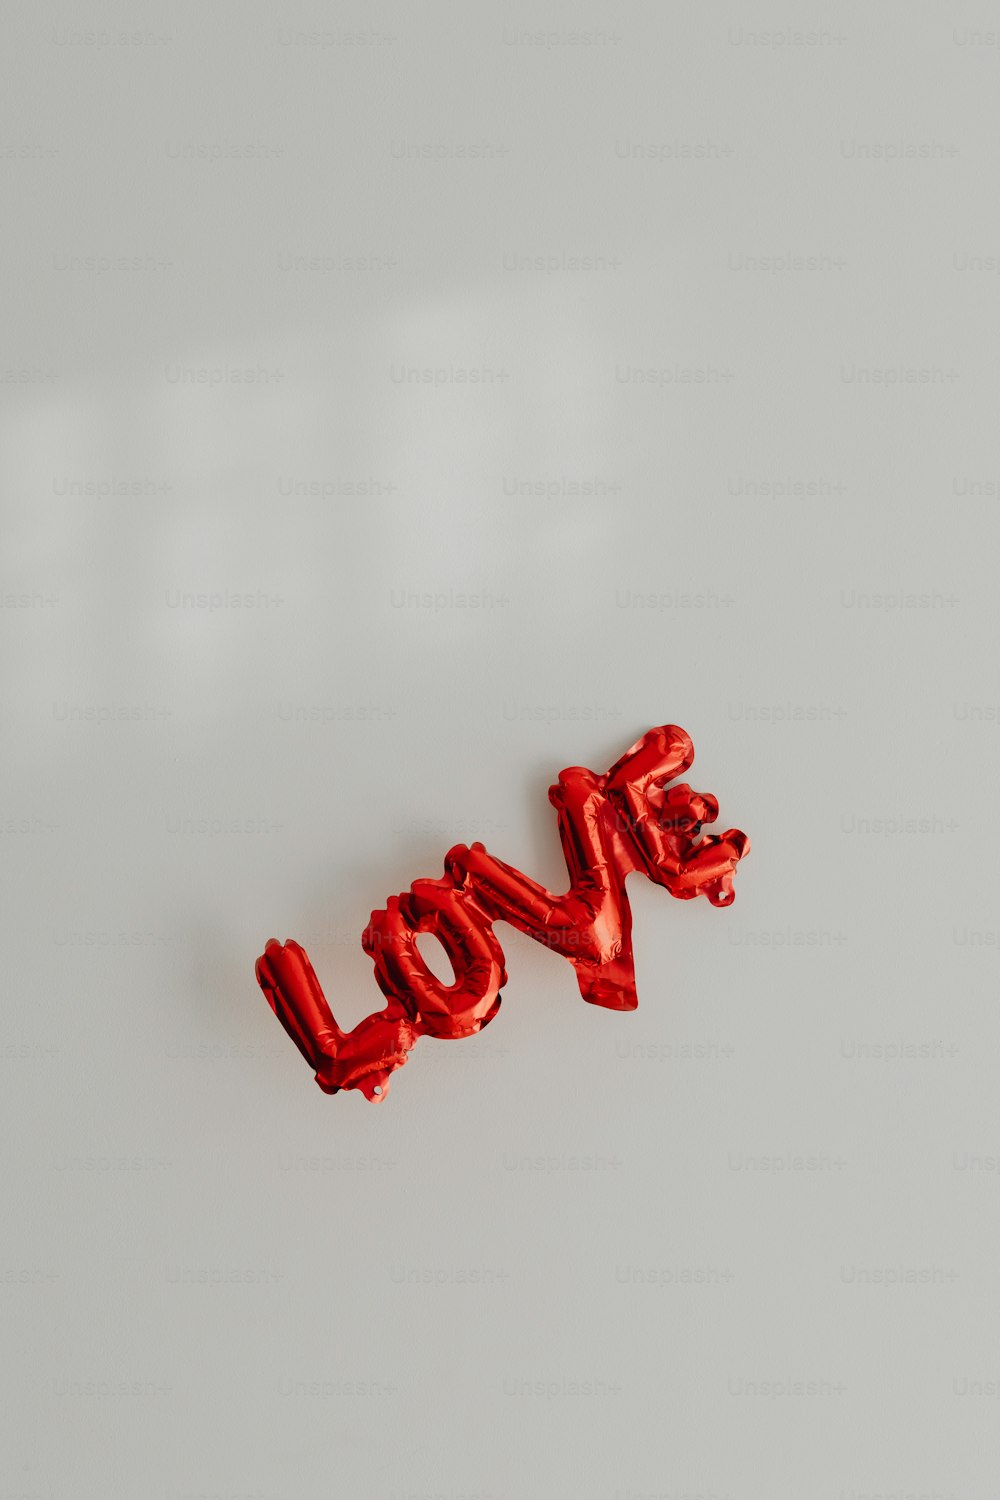 Das Wort Liebe aus Süßigkeiten auf einer weißen Oberfläche